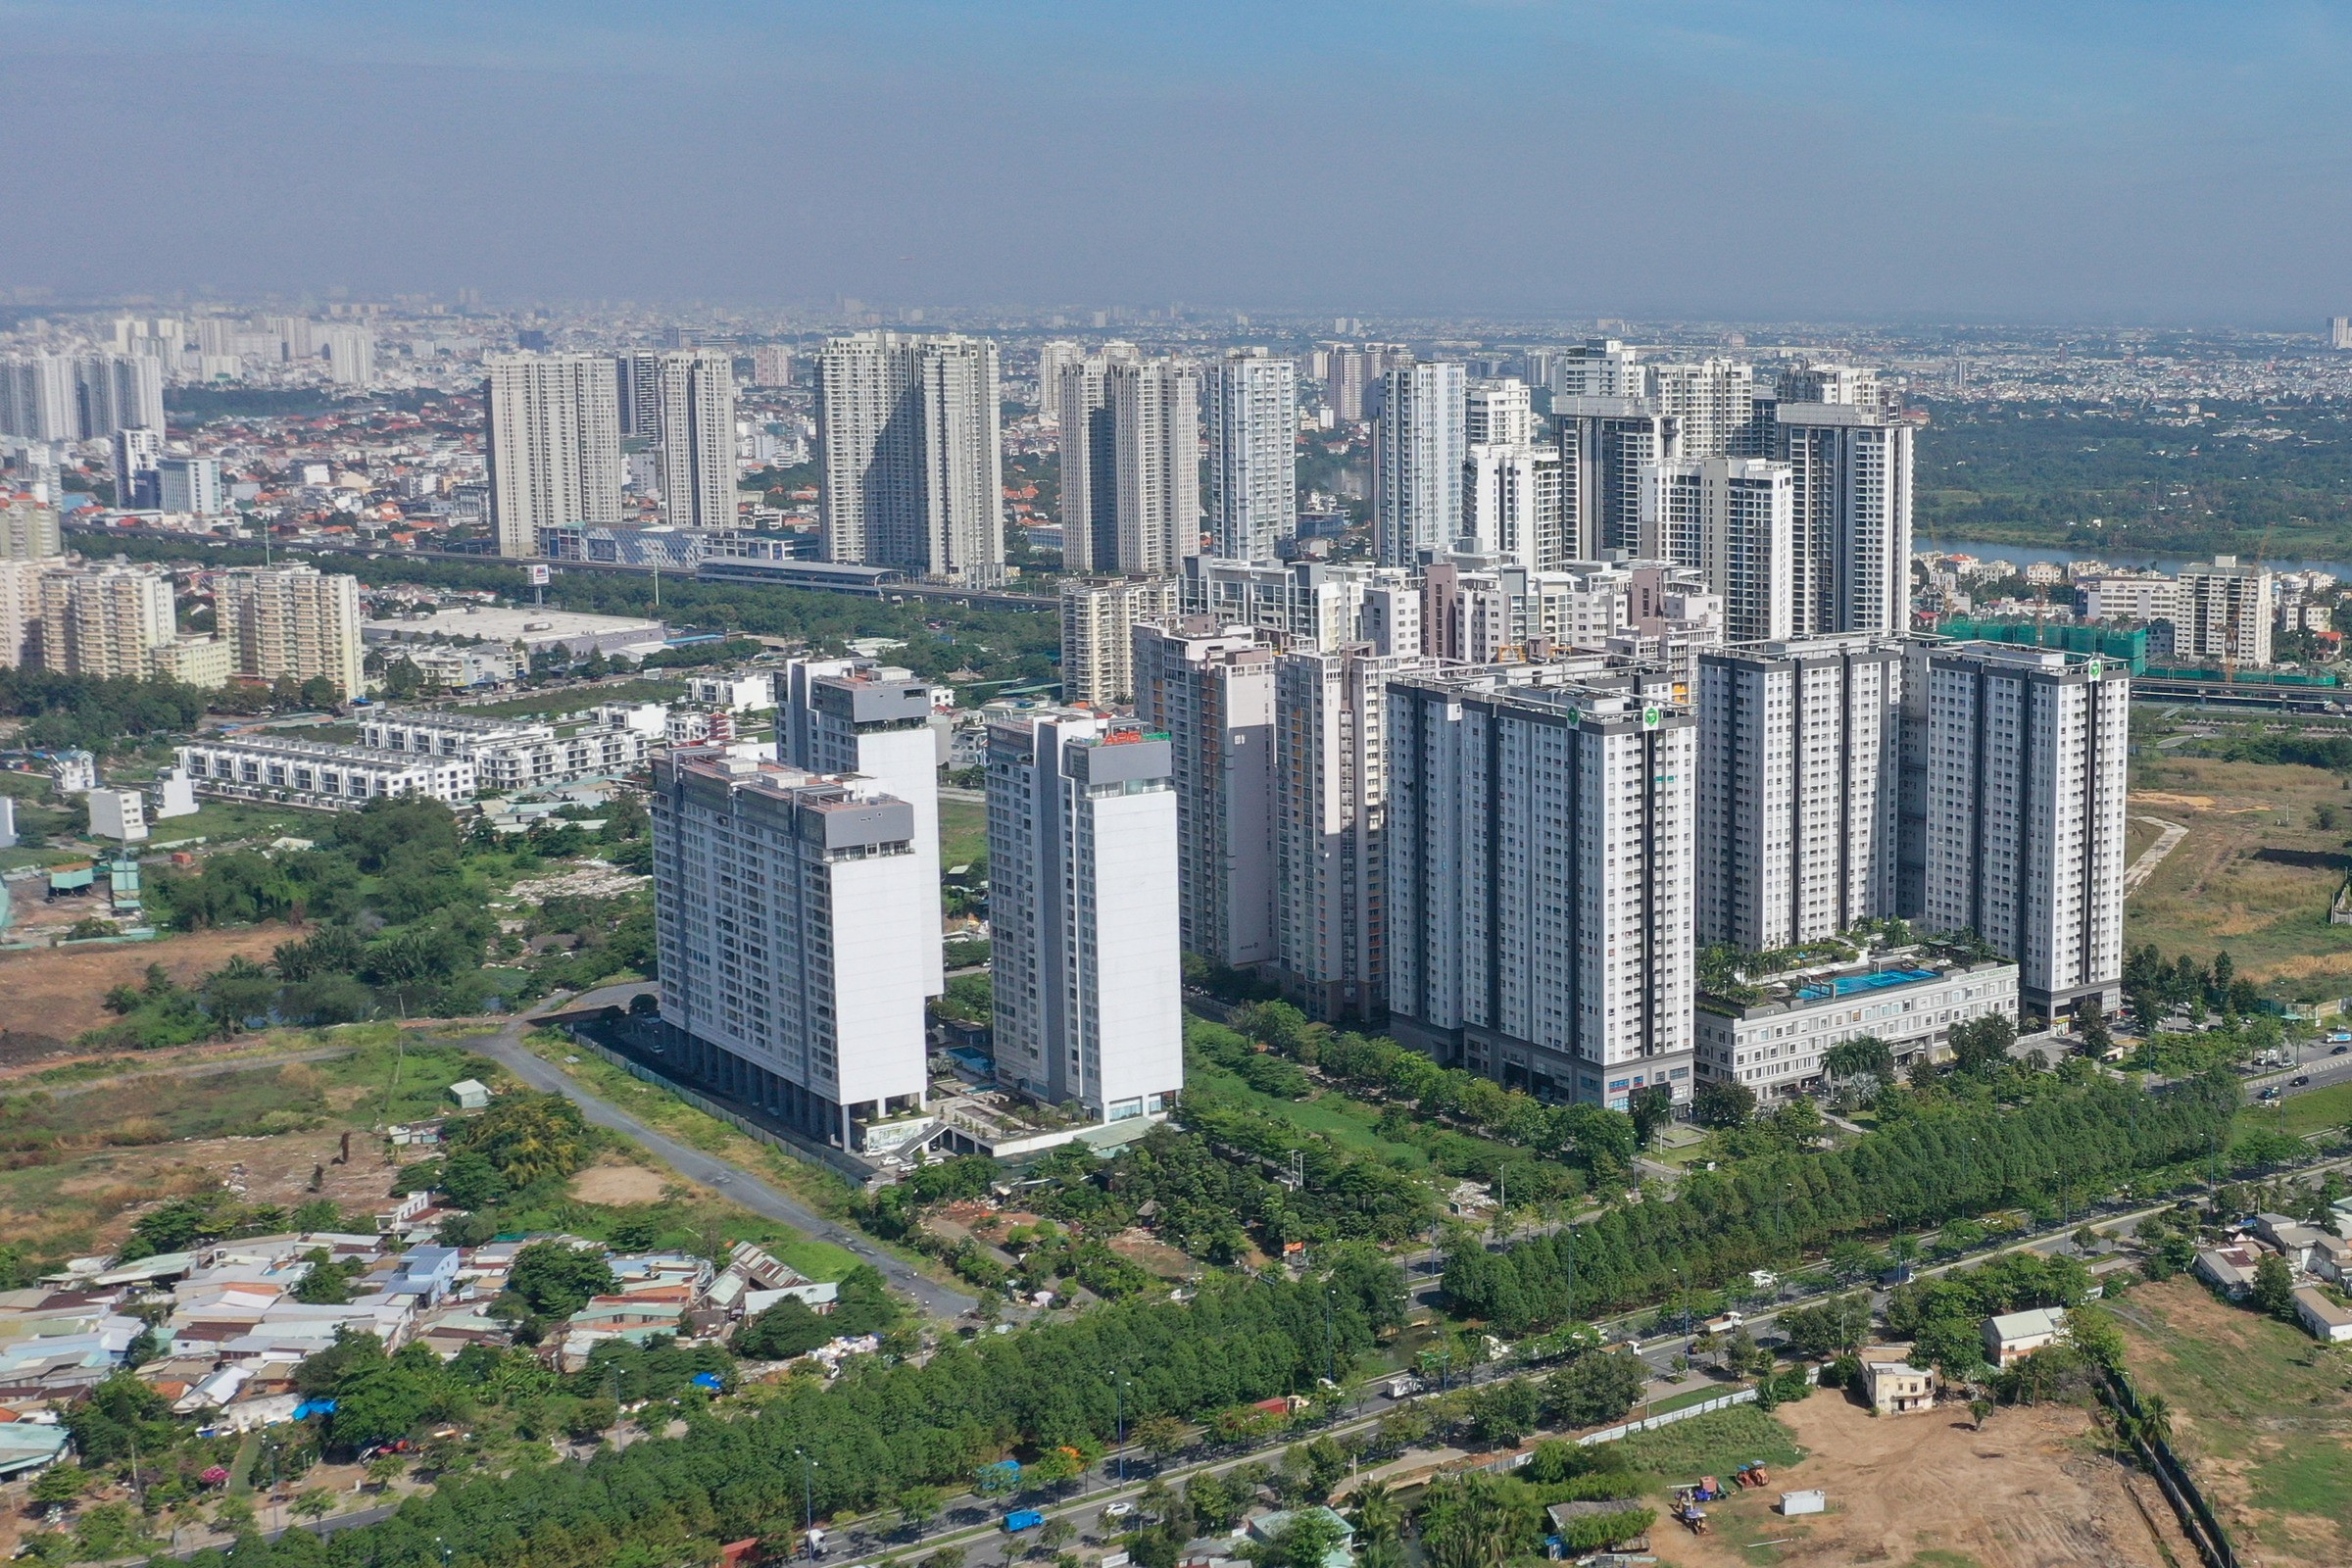 
Chính sách siết tín dụng bất động sản đã kiến thanh khoản của thị trường căn hộ ở TP Hồ Chí Minh và các vùng phụ cận sụt giảm
